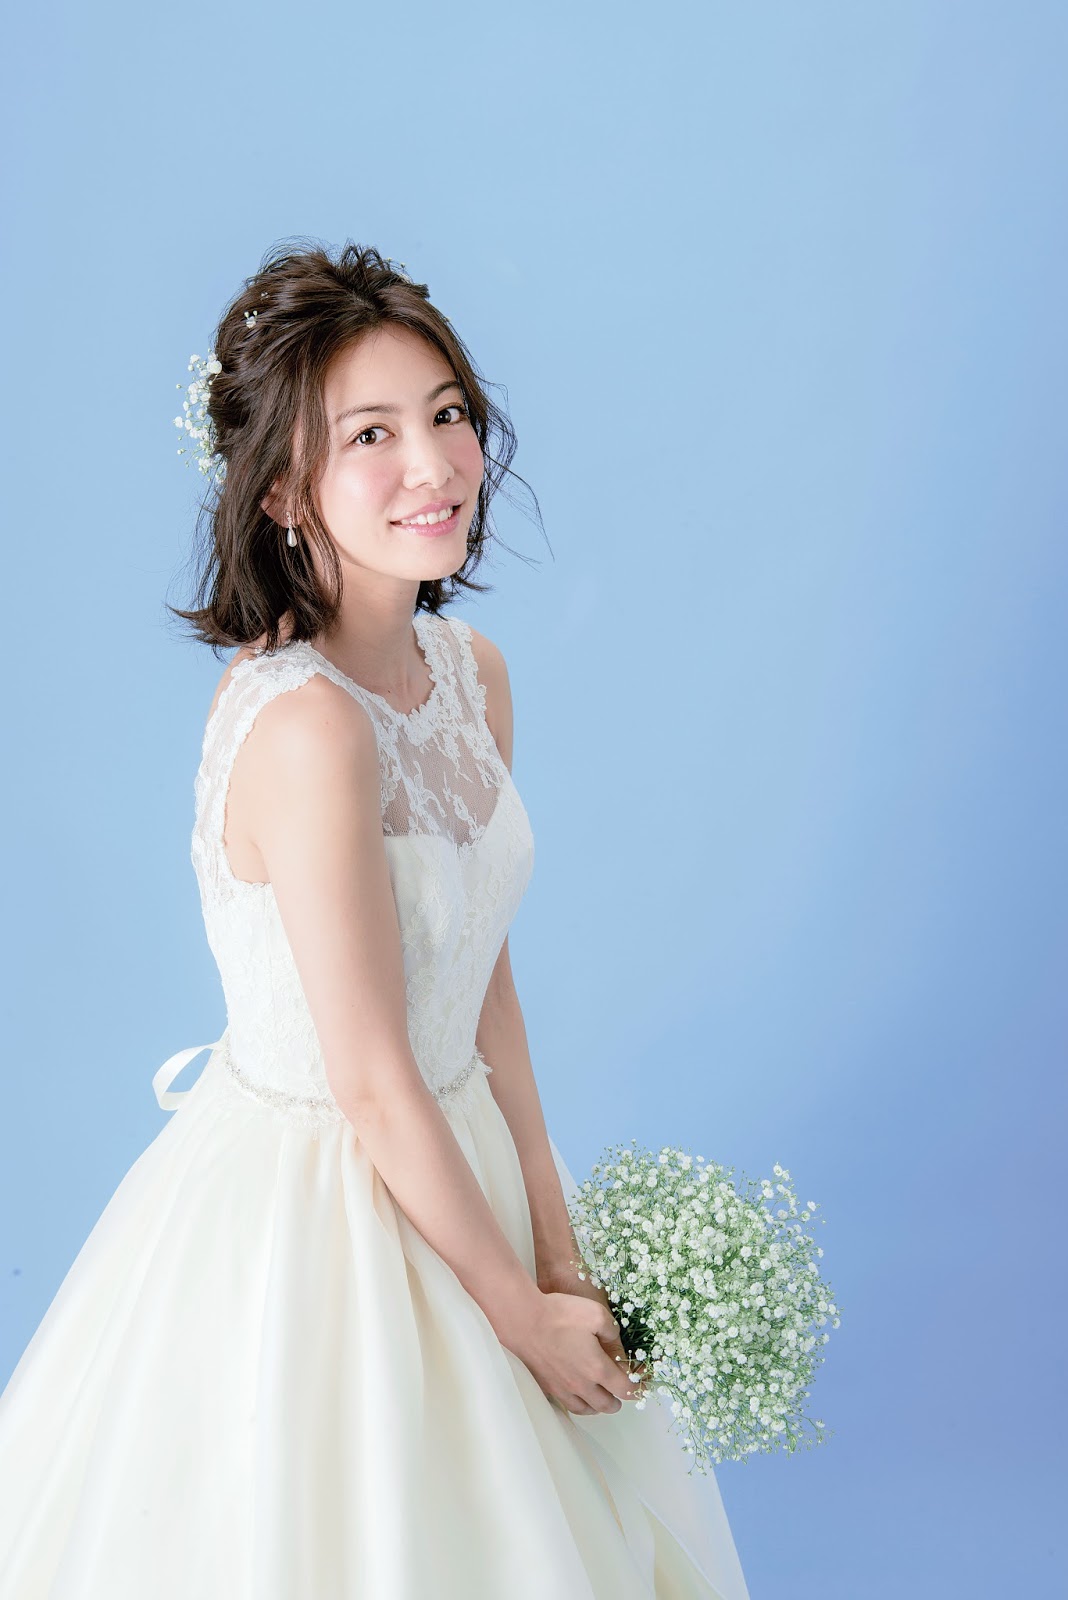 ウェディングドレス編 あえて切りたいくらいかわいい ショート ボブの花嫁ヘアスタイル Naver まとめ